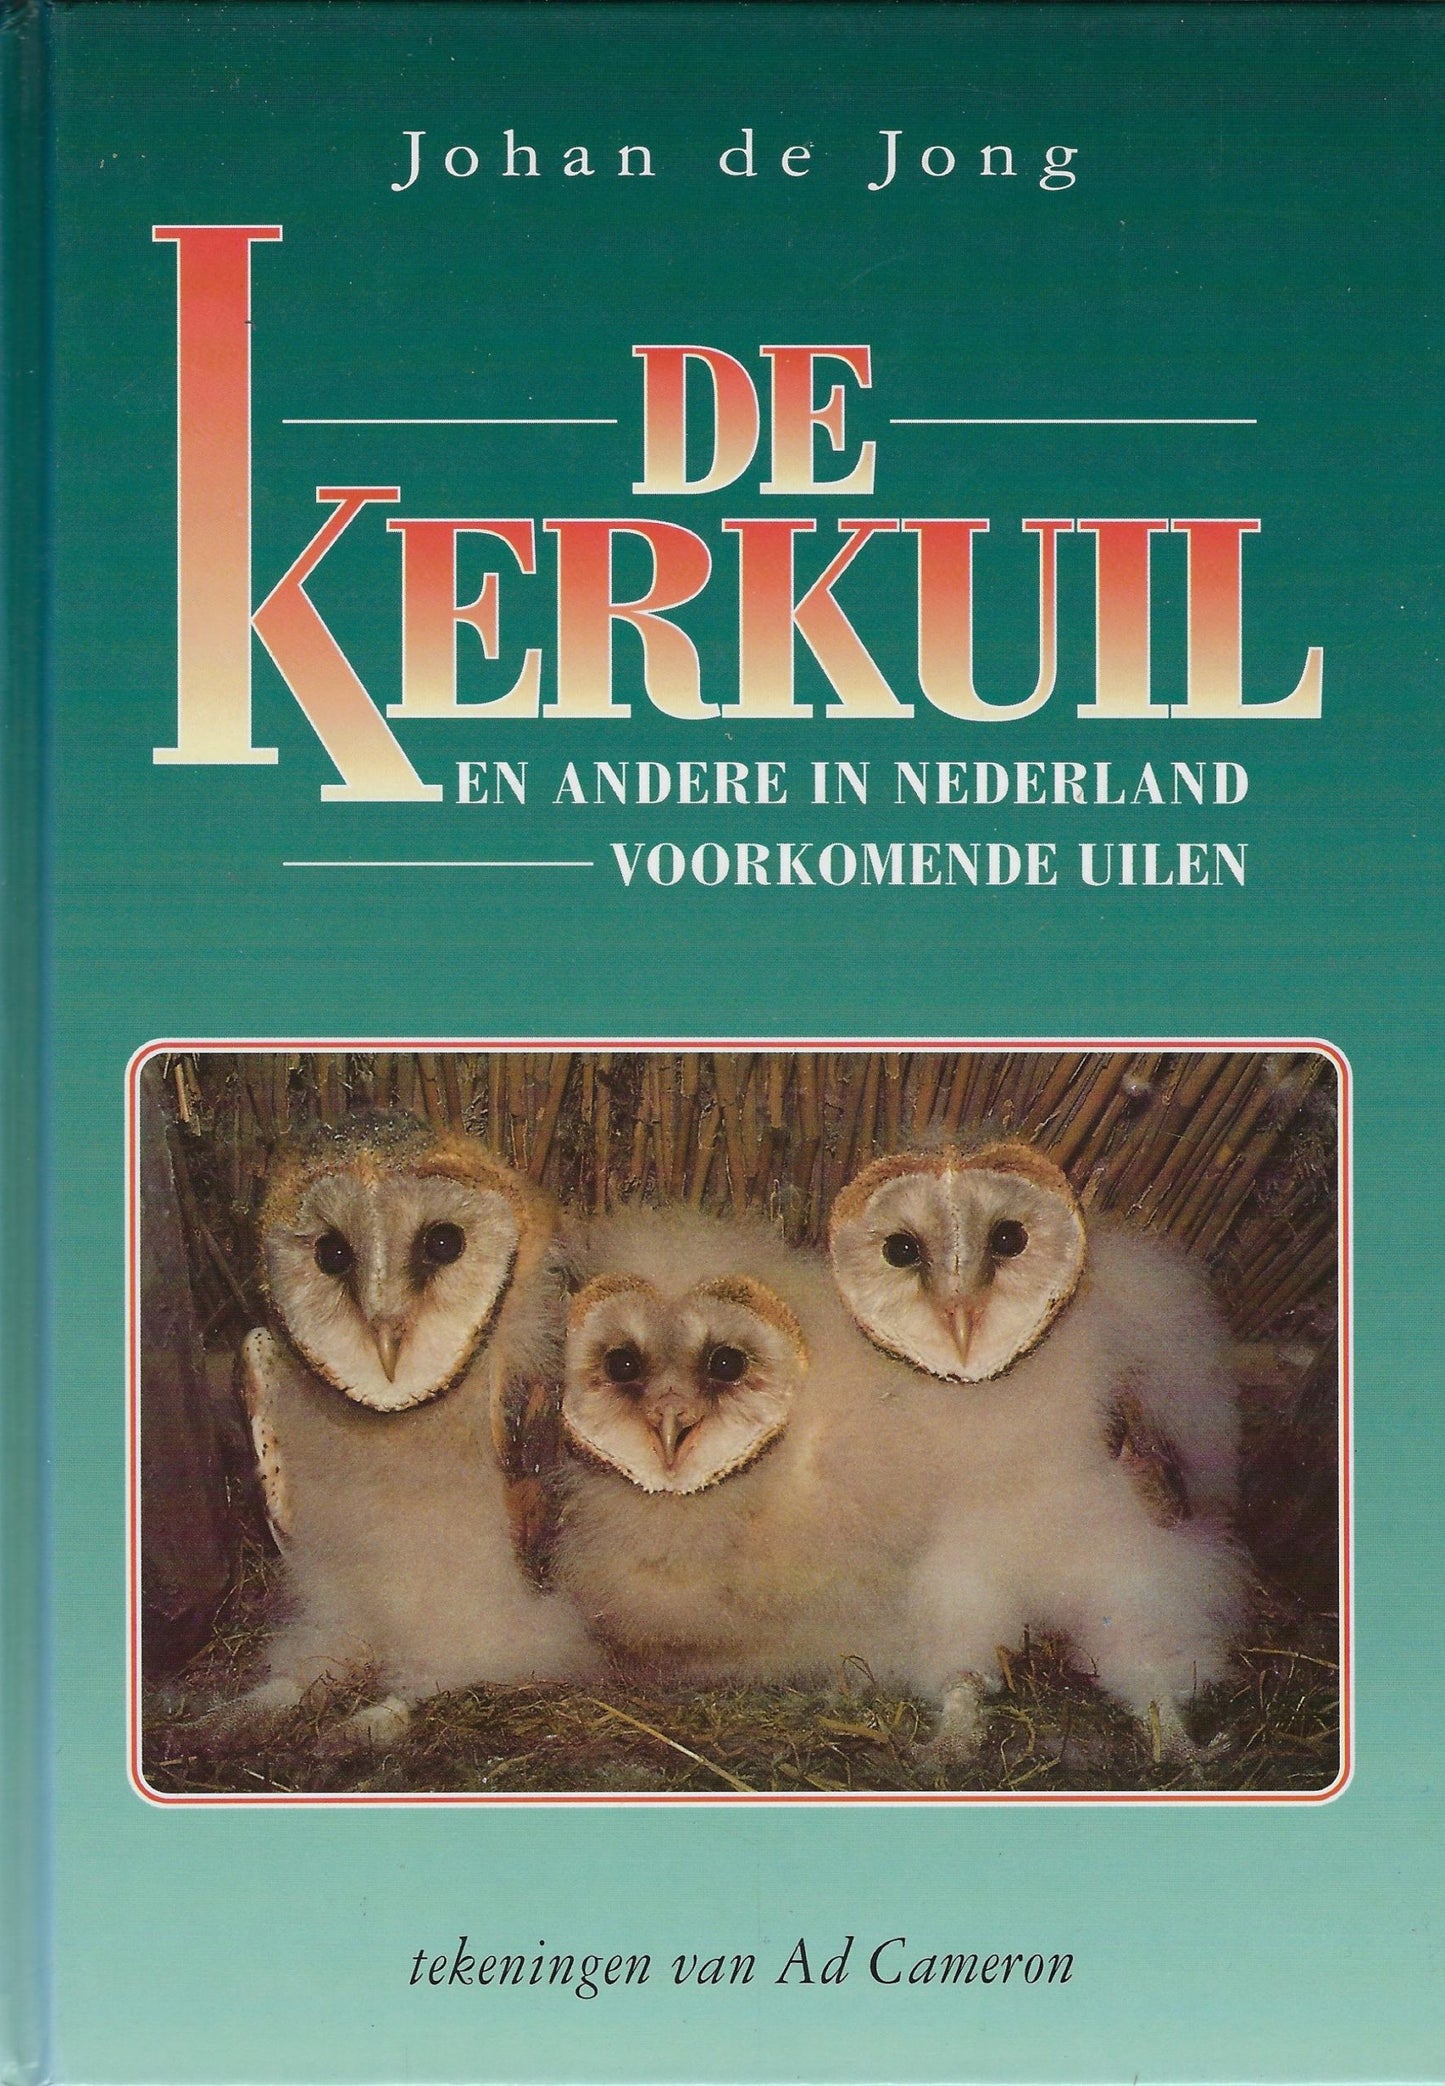 De kerkuil en andere in Nederland voorkomende uilen